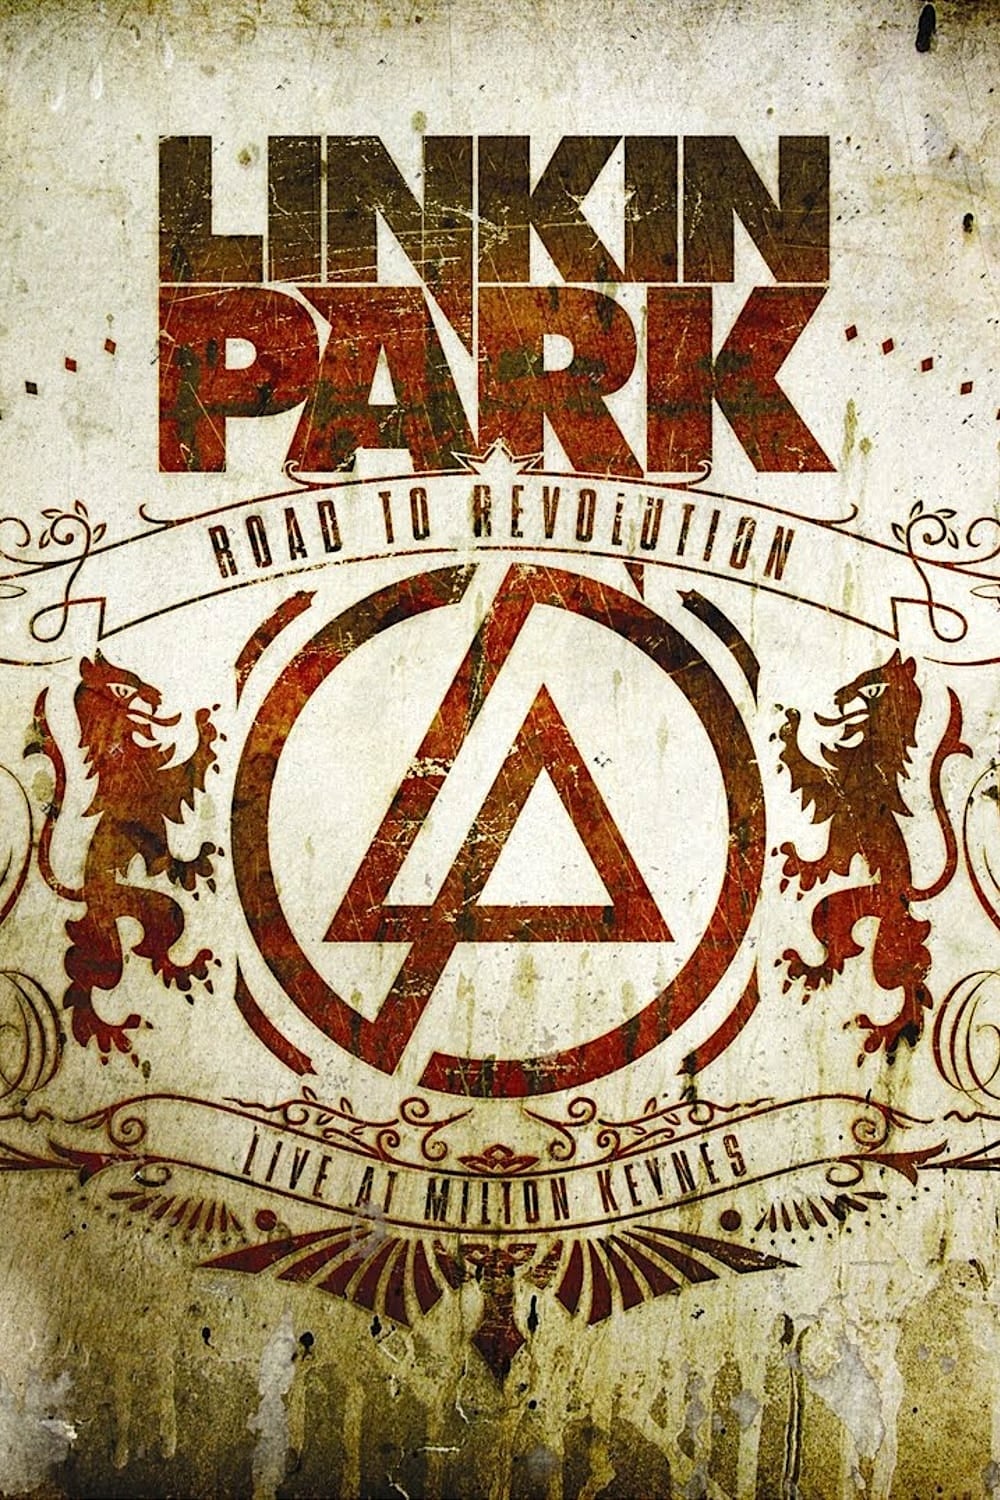 Linkin Park - Road to Revolution